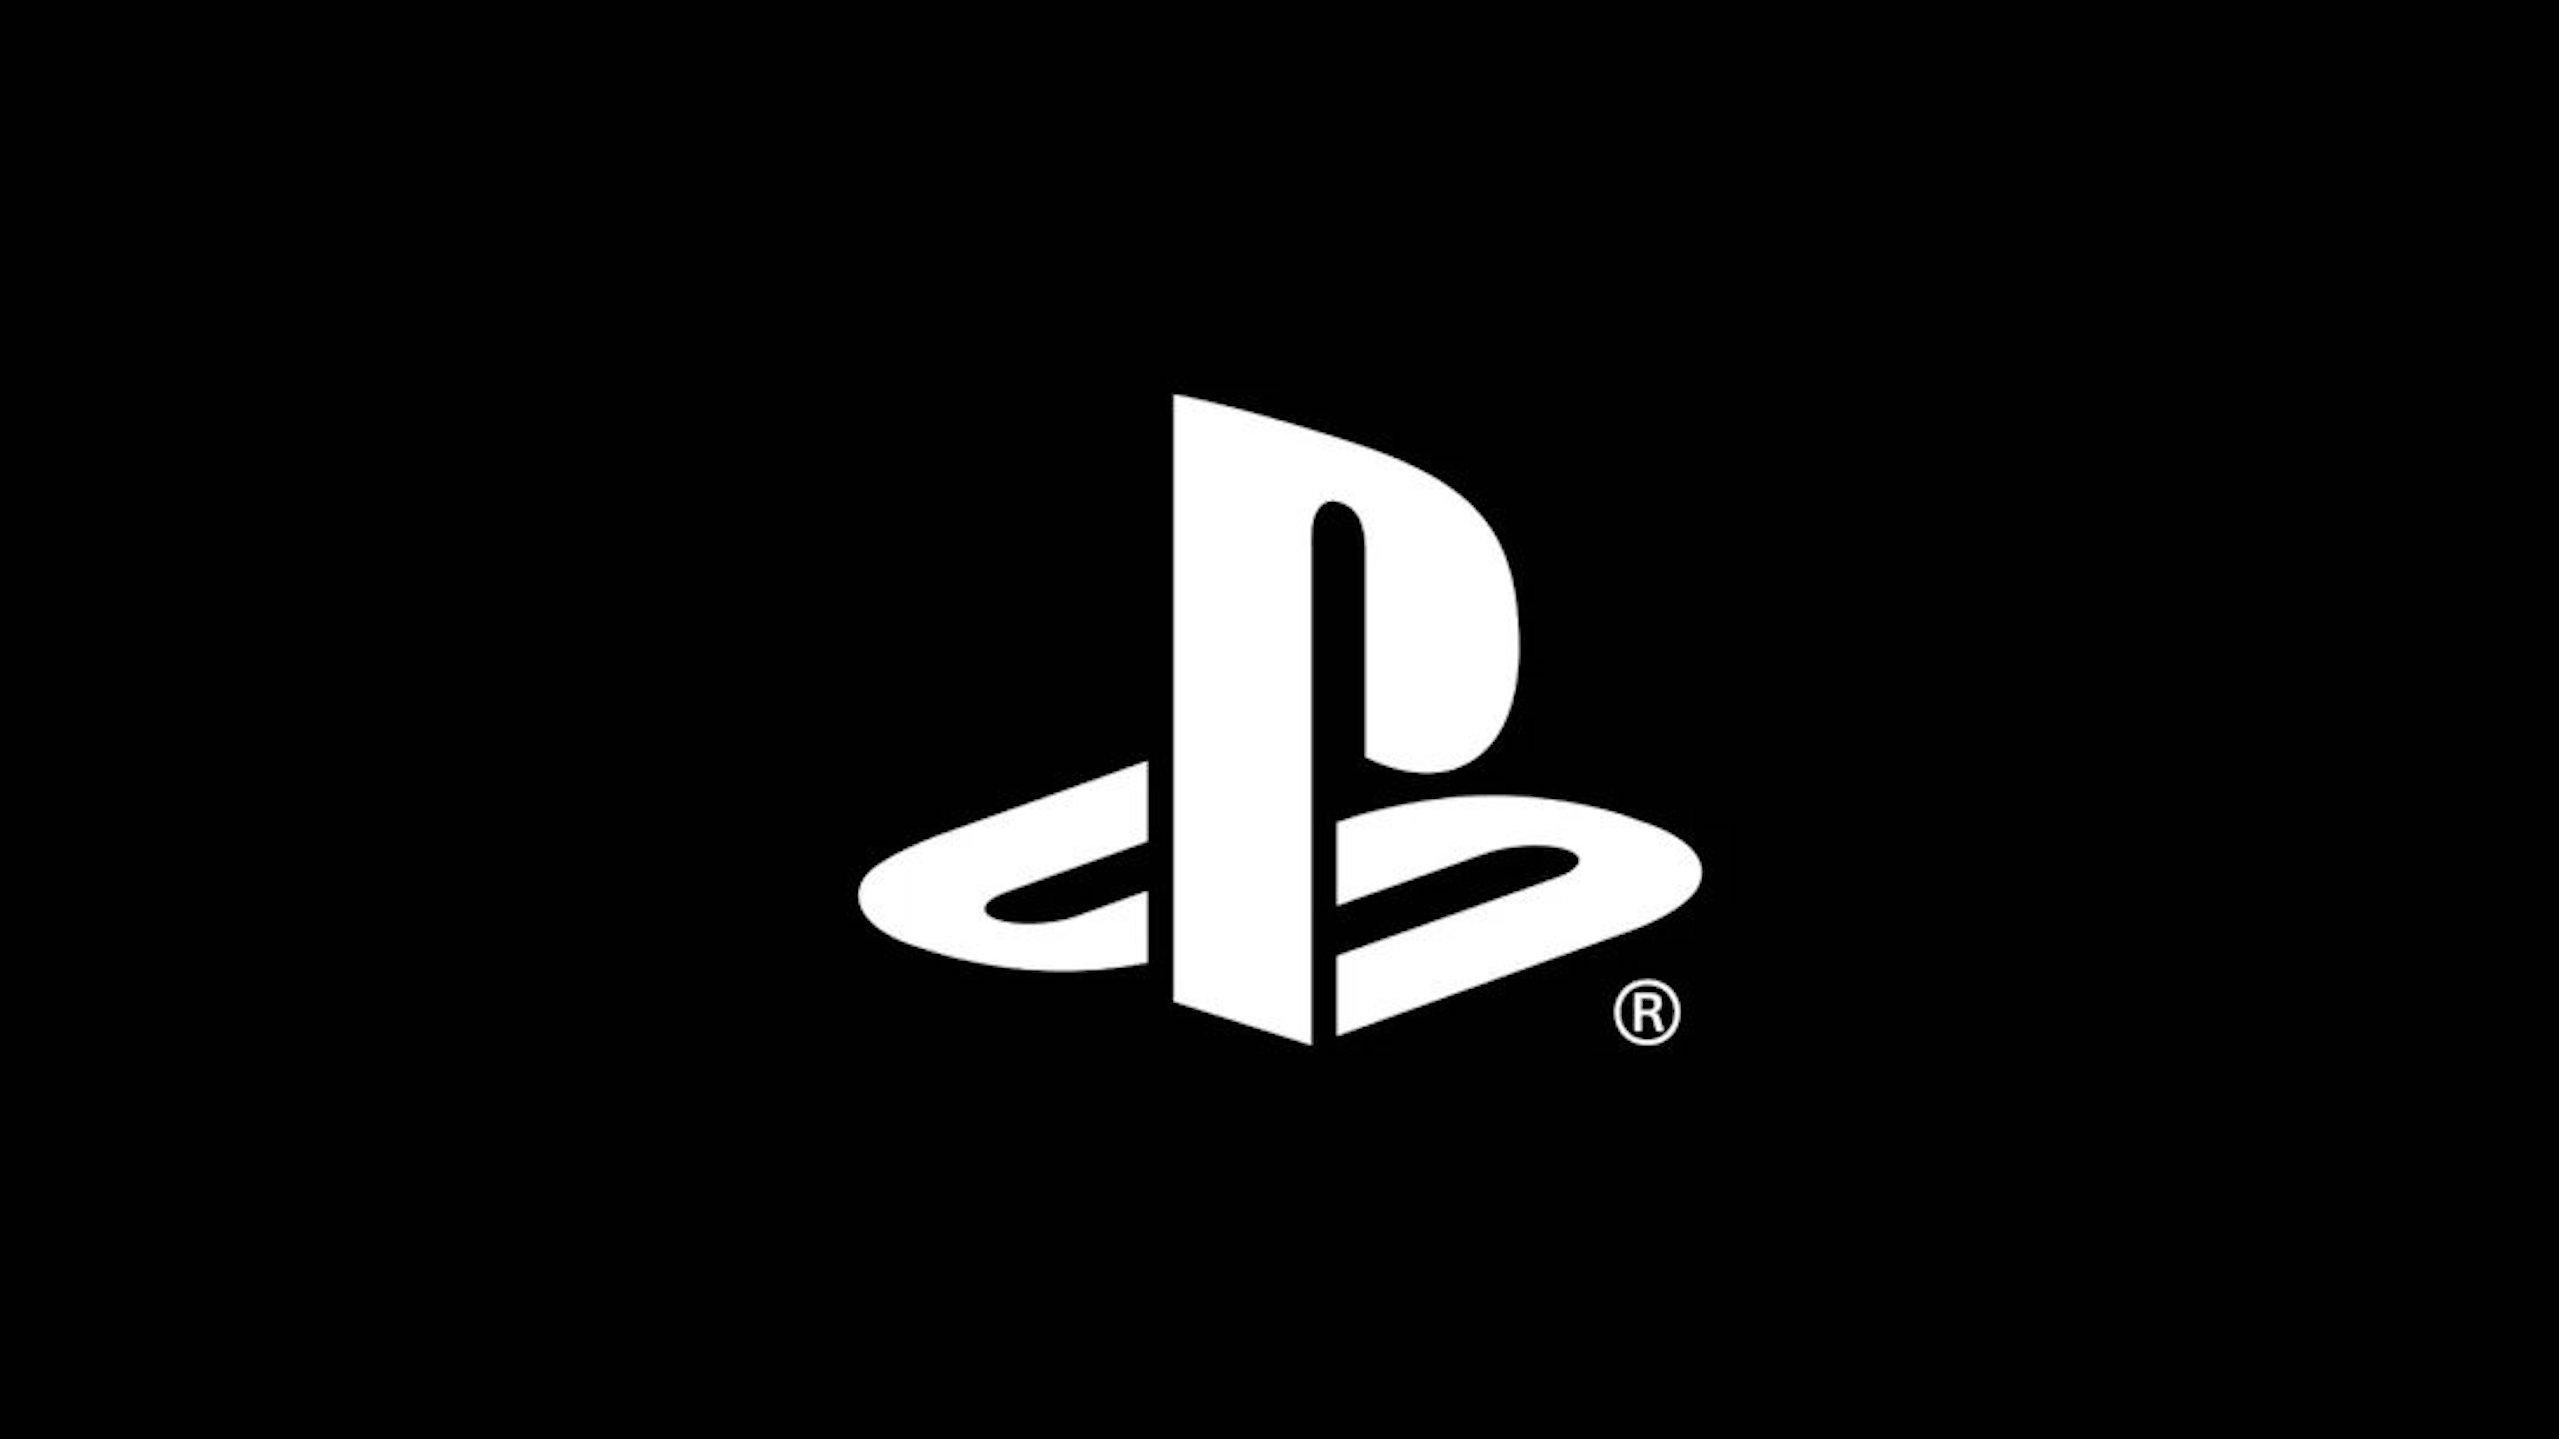 Sony'den, PlayStation'daki ses kaydetme işlevi hakkında açıklama: Denetleme için kullanılacak